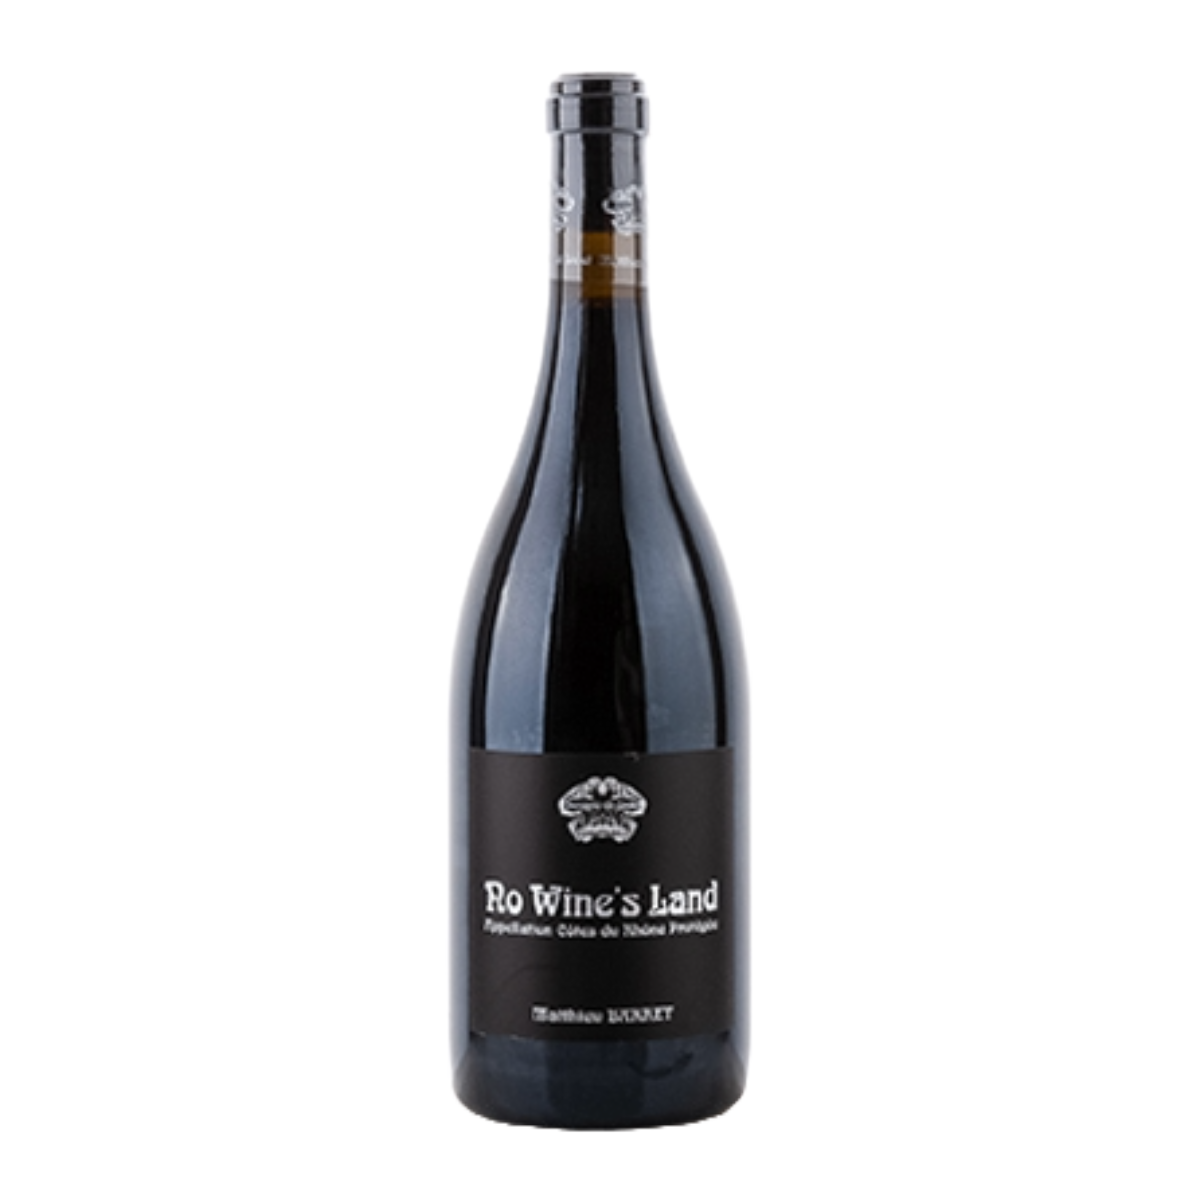 Côtes Du Rhône "No Wine's Land" rouge AOP 2020